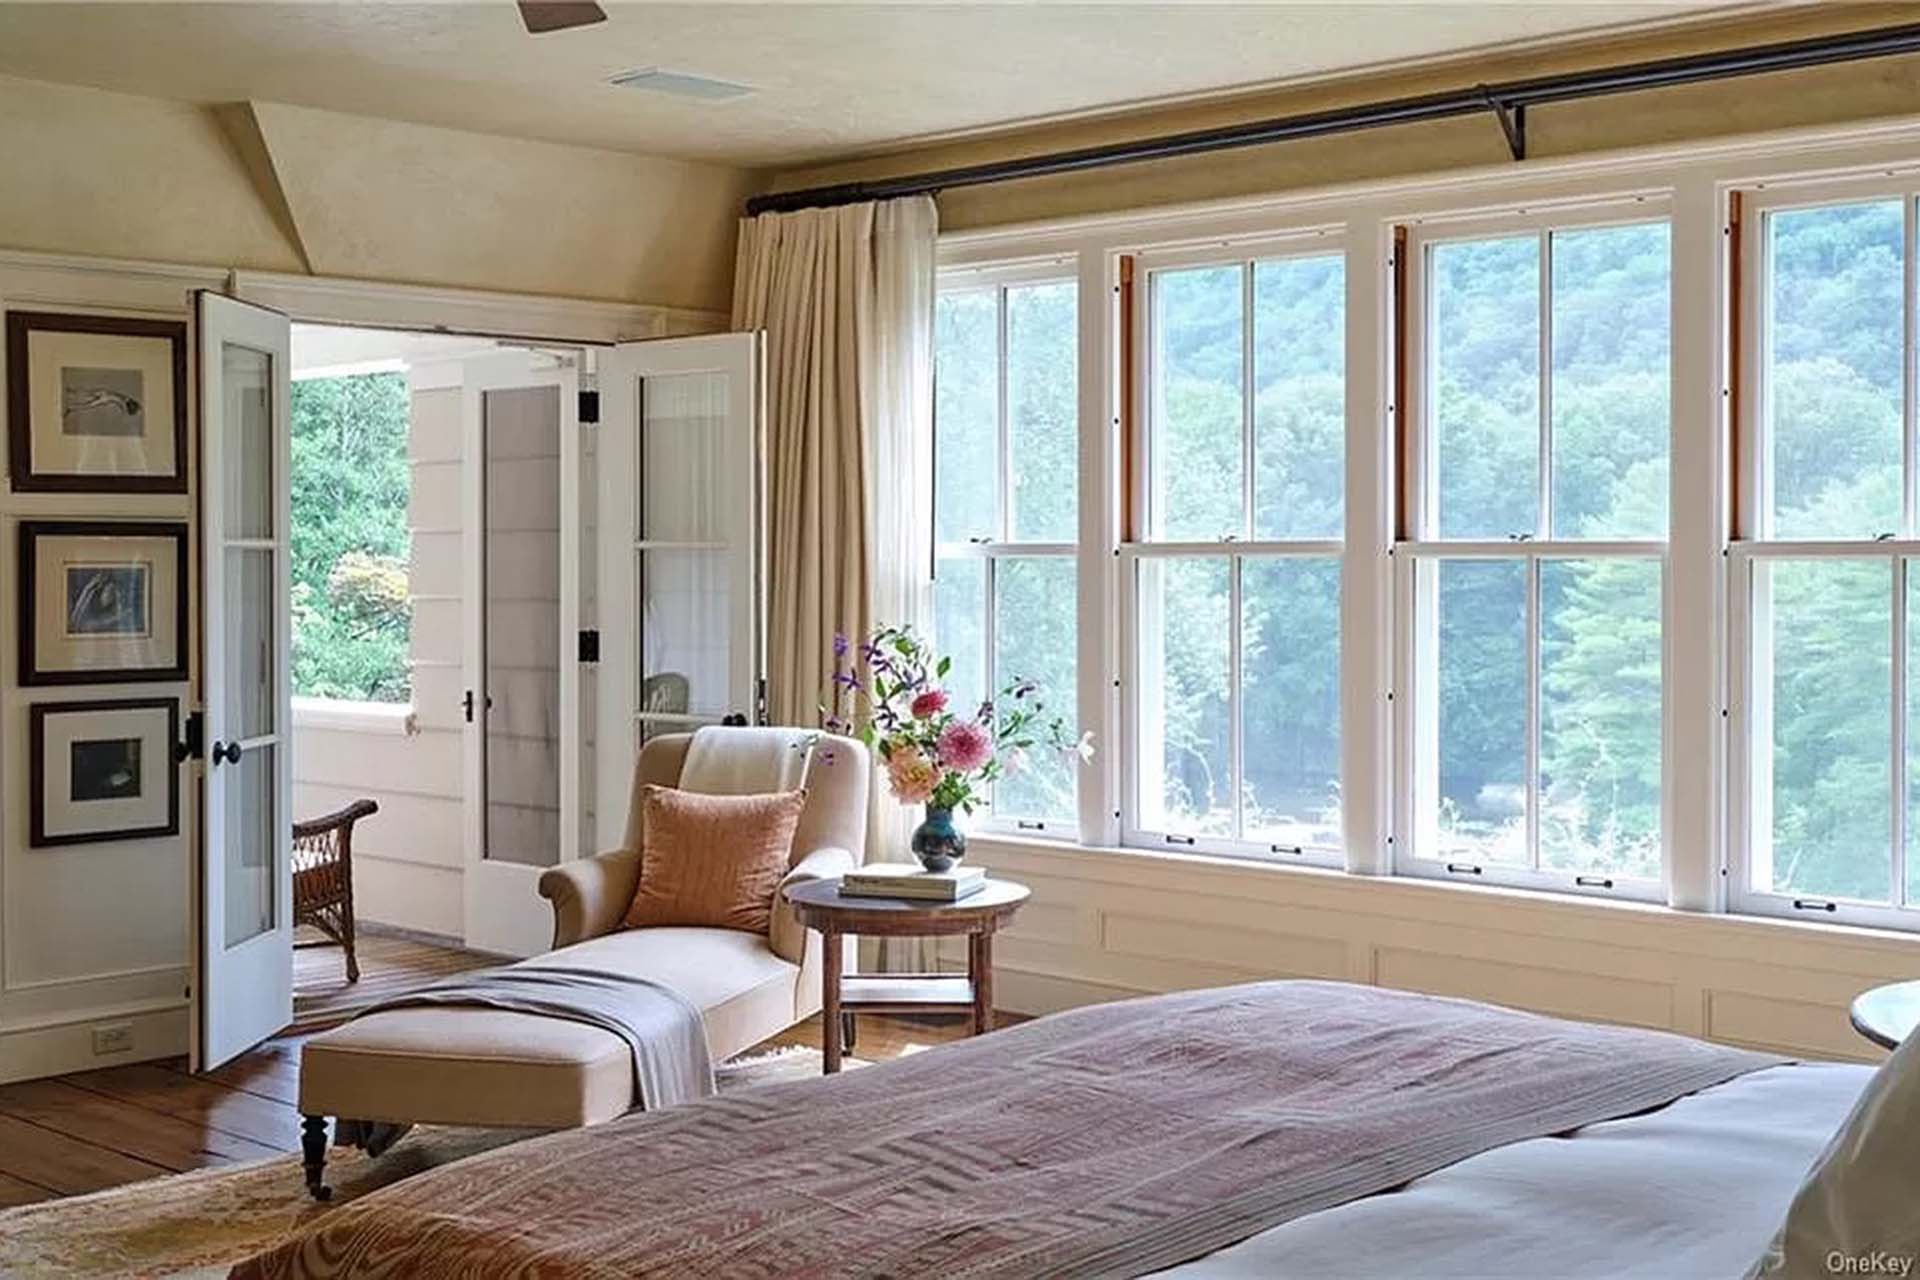 La mansión de Richard Gere está especialmente diseñada para disfrutar de la naturaleza (Realtor.com)